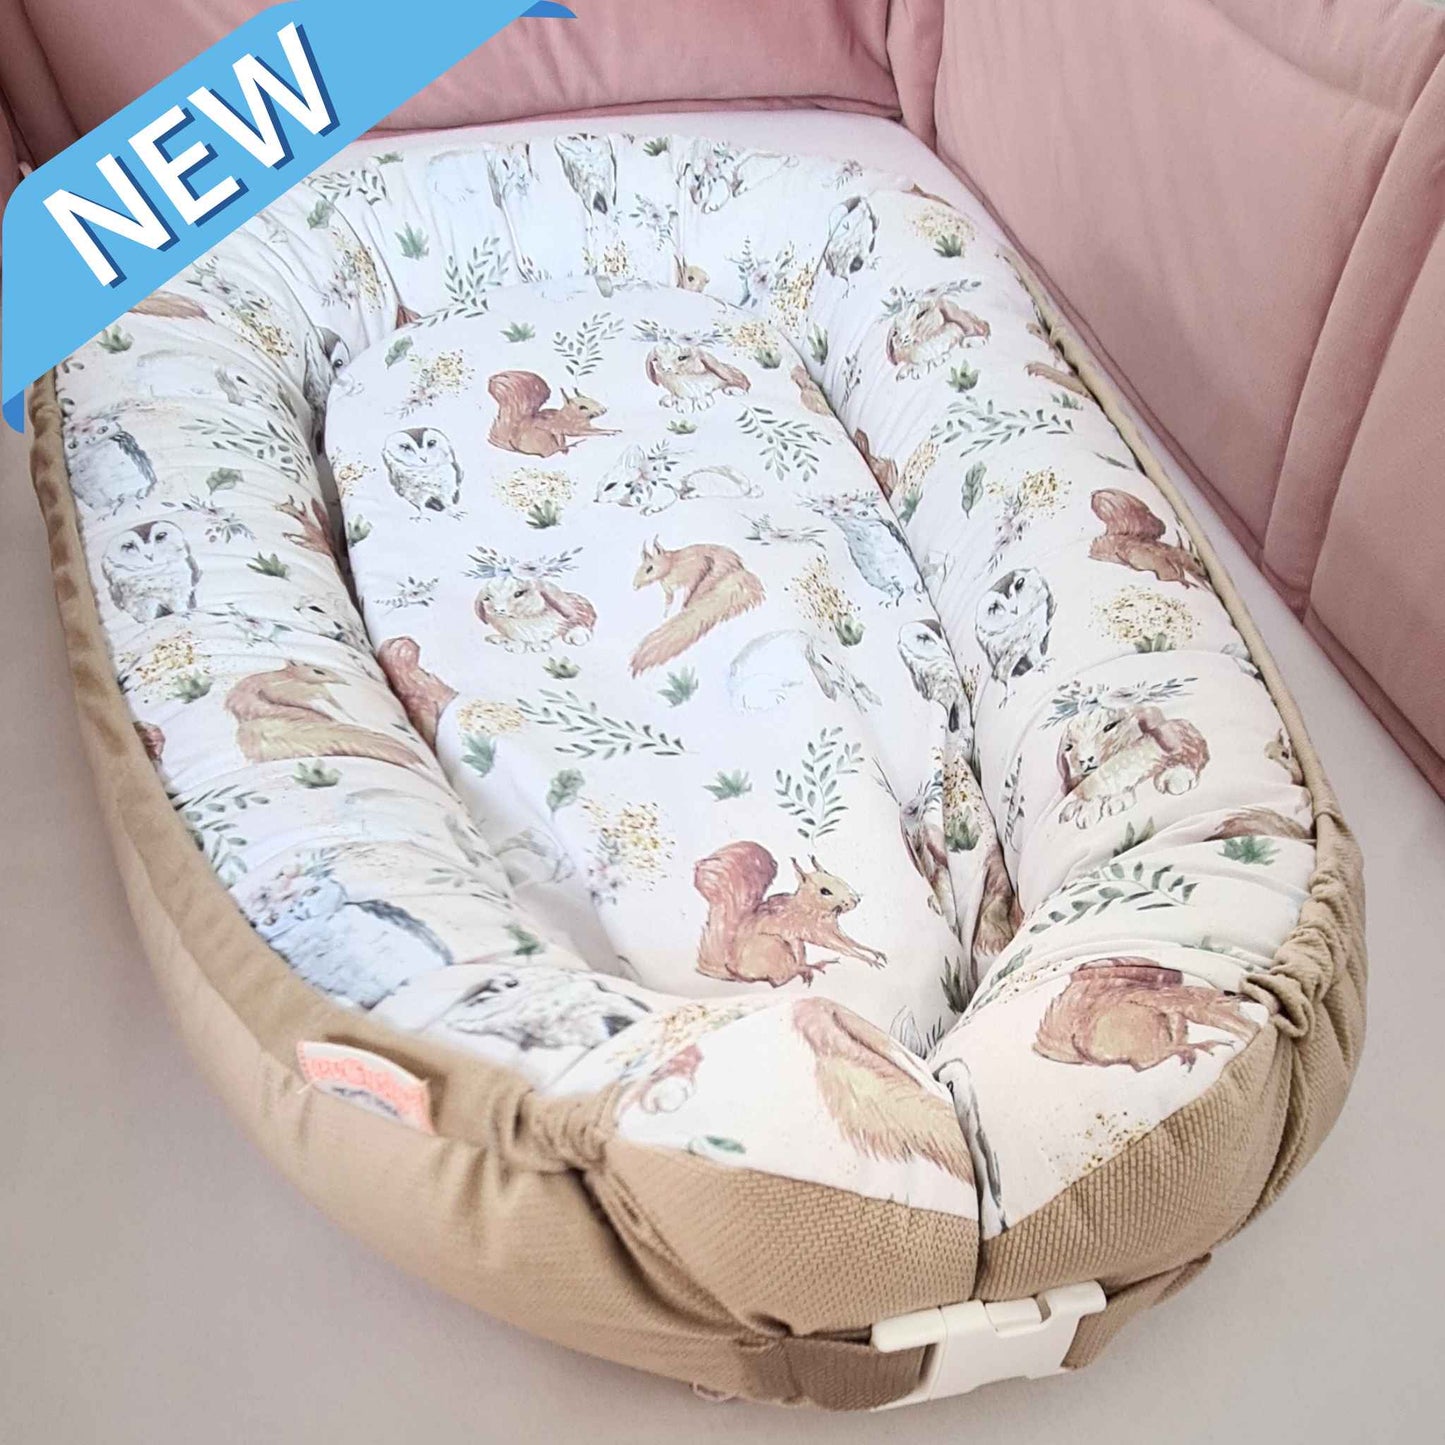 Cuddle Up - Cozy Baby Nest 0+ Months Whimsical Woodland Wonderland